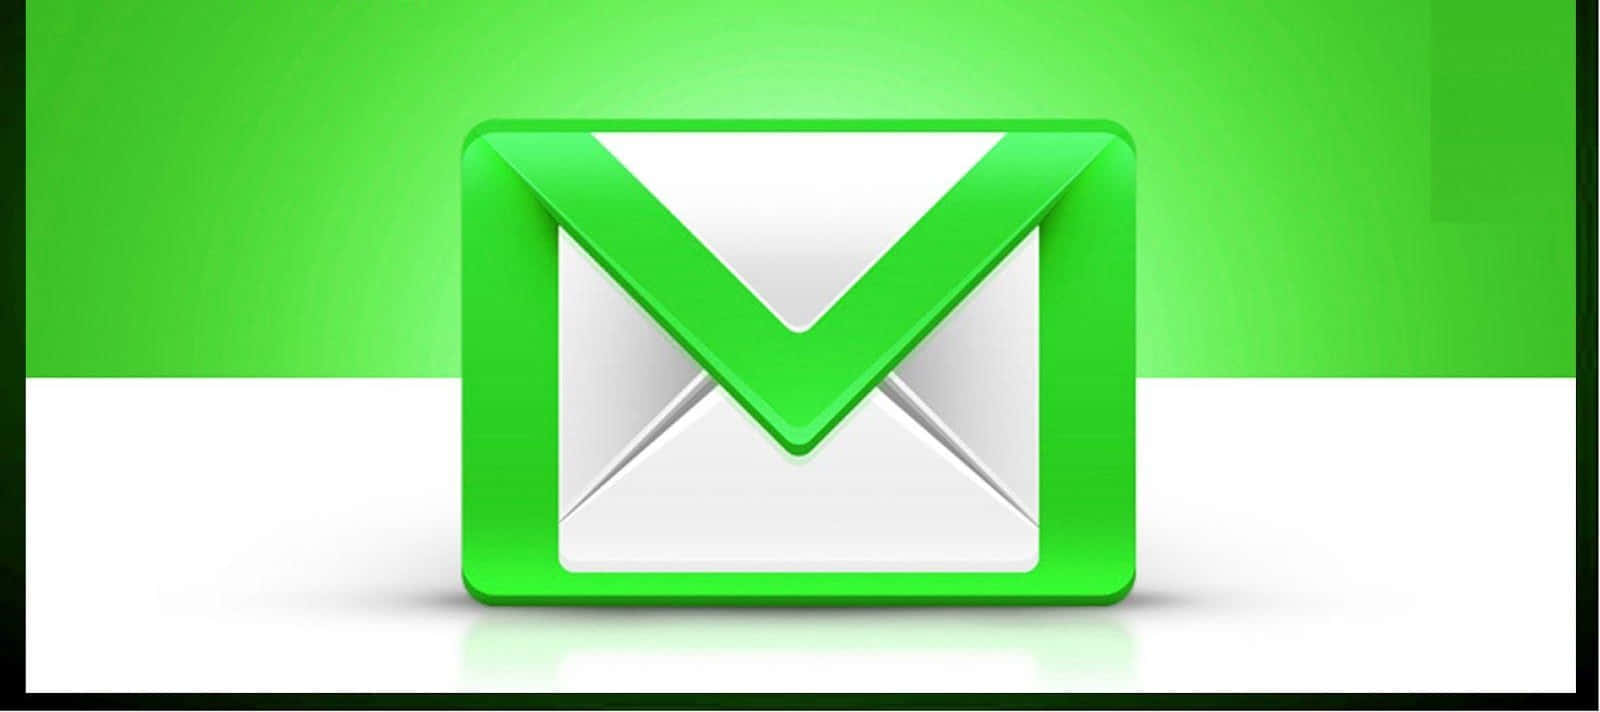 Eingrünes Und Weißes Mail-symbol Auf Einem Grünen Hintergrund.